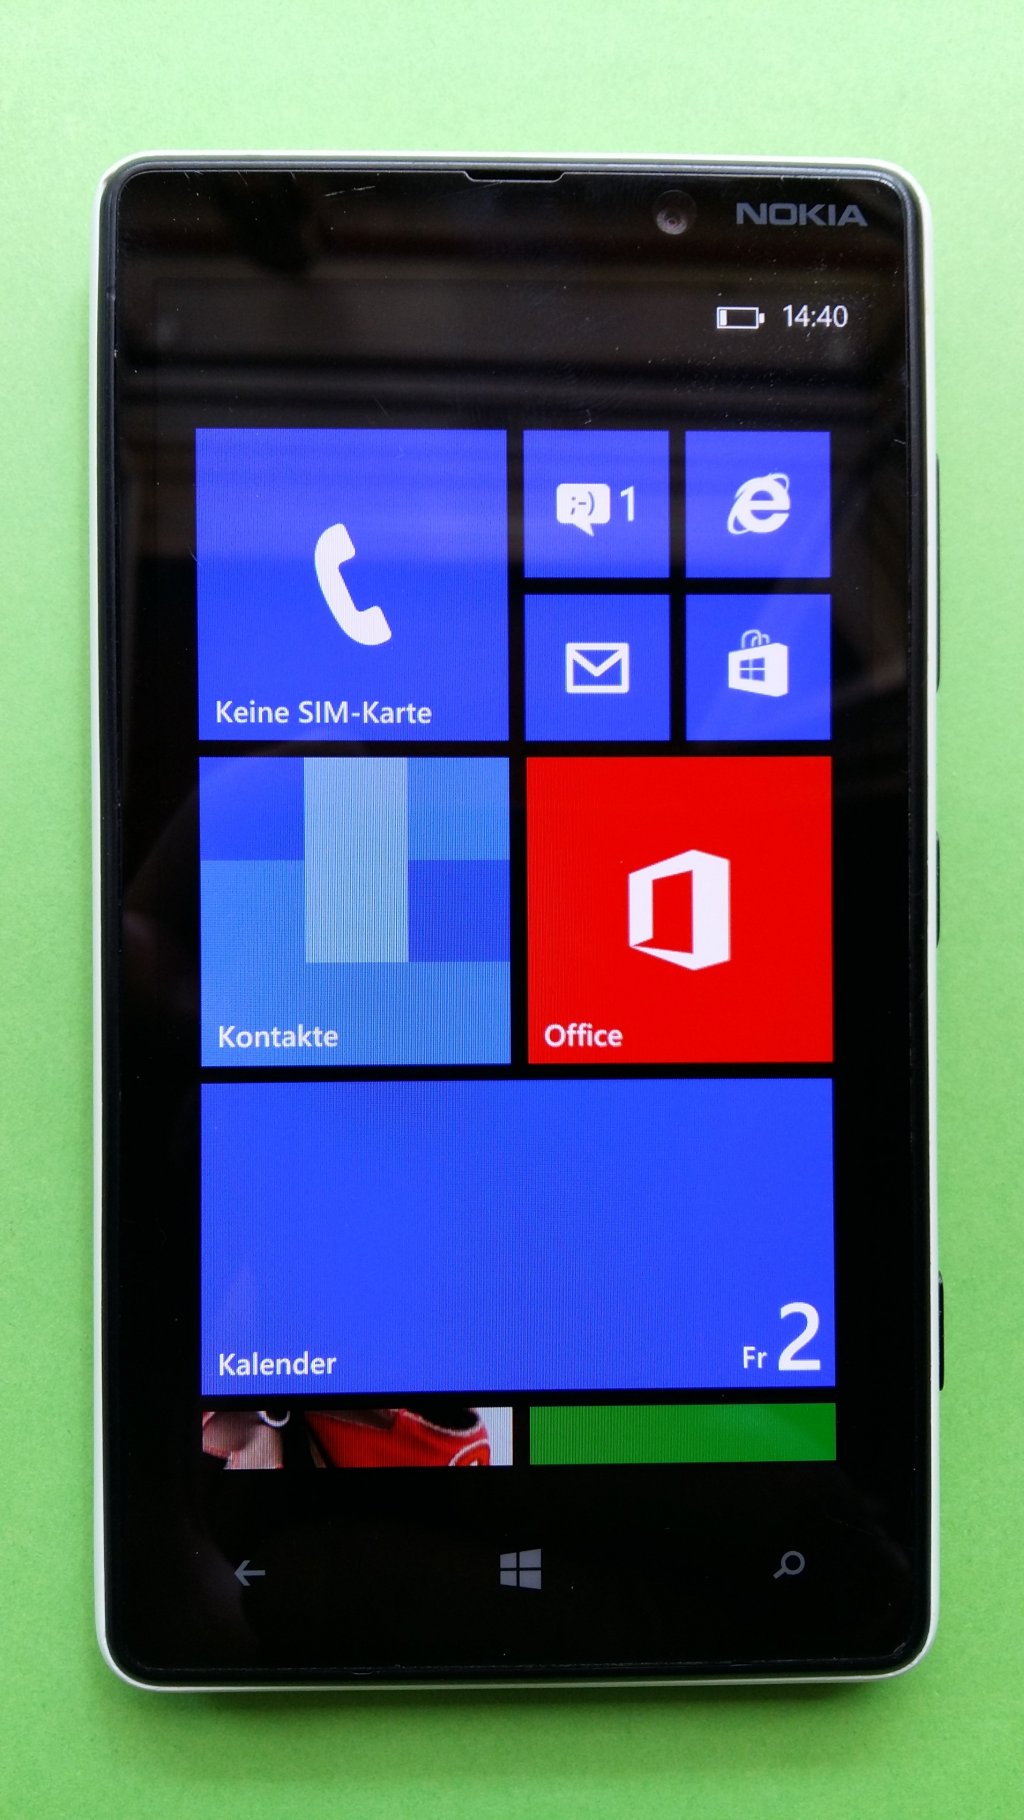 image-8141630-Nokia_820.1_Lumia_(2)1.w640.jpg